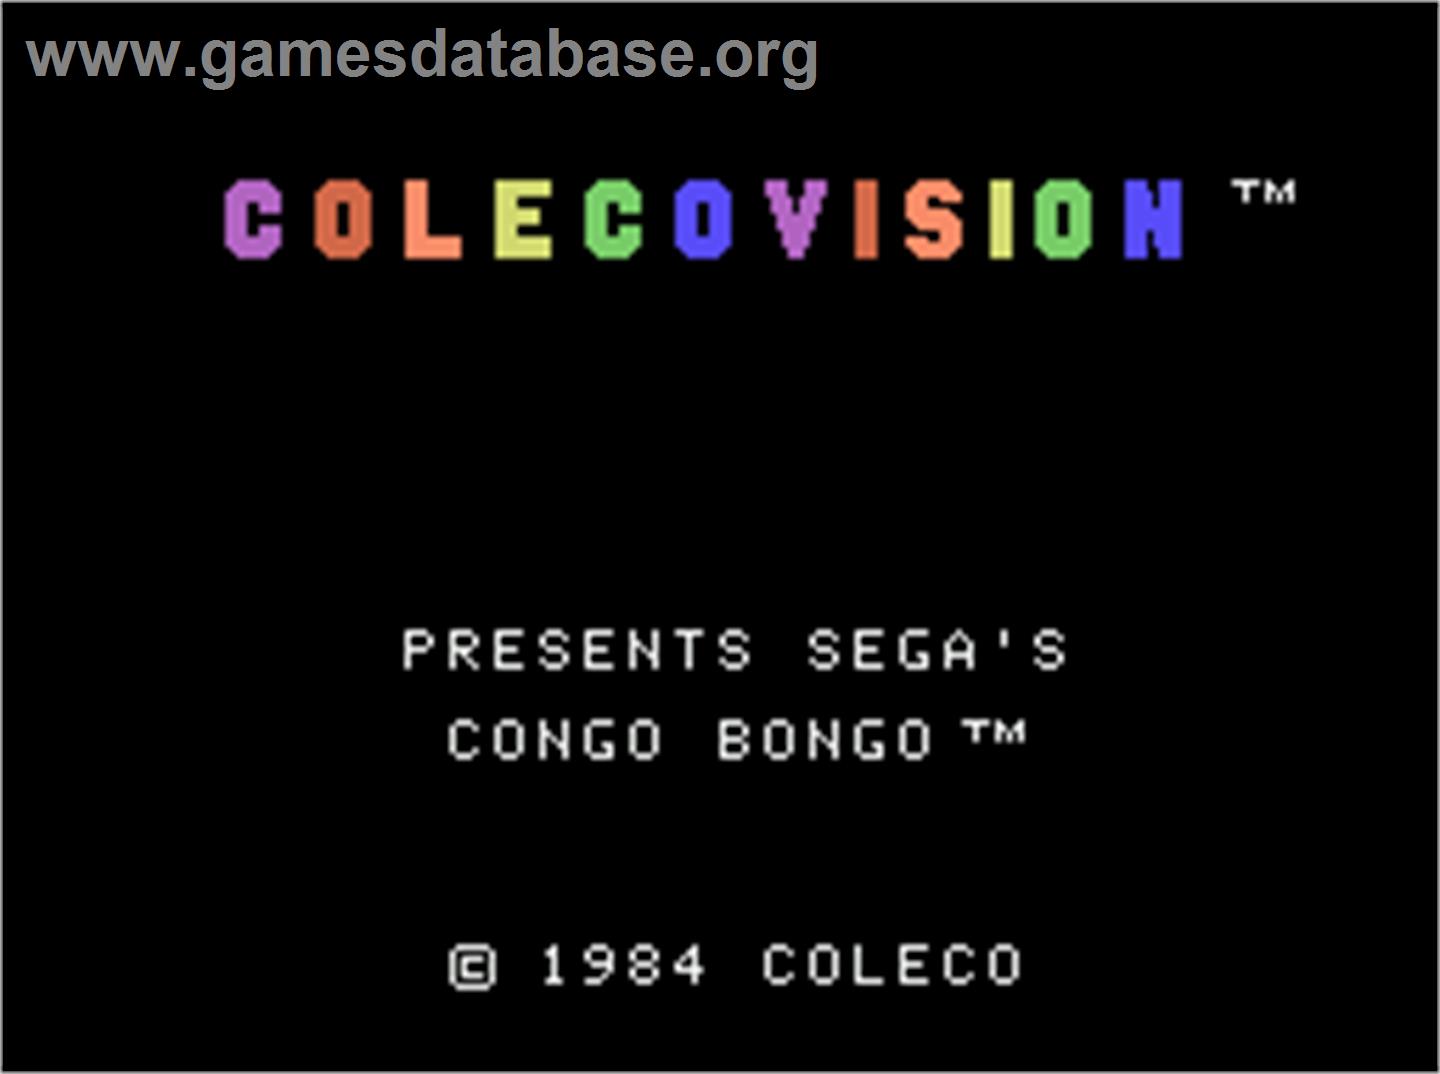 Congo Bongo - Coleco Vision - Artwork - Title Screen